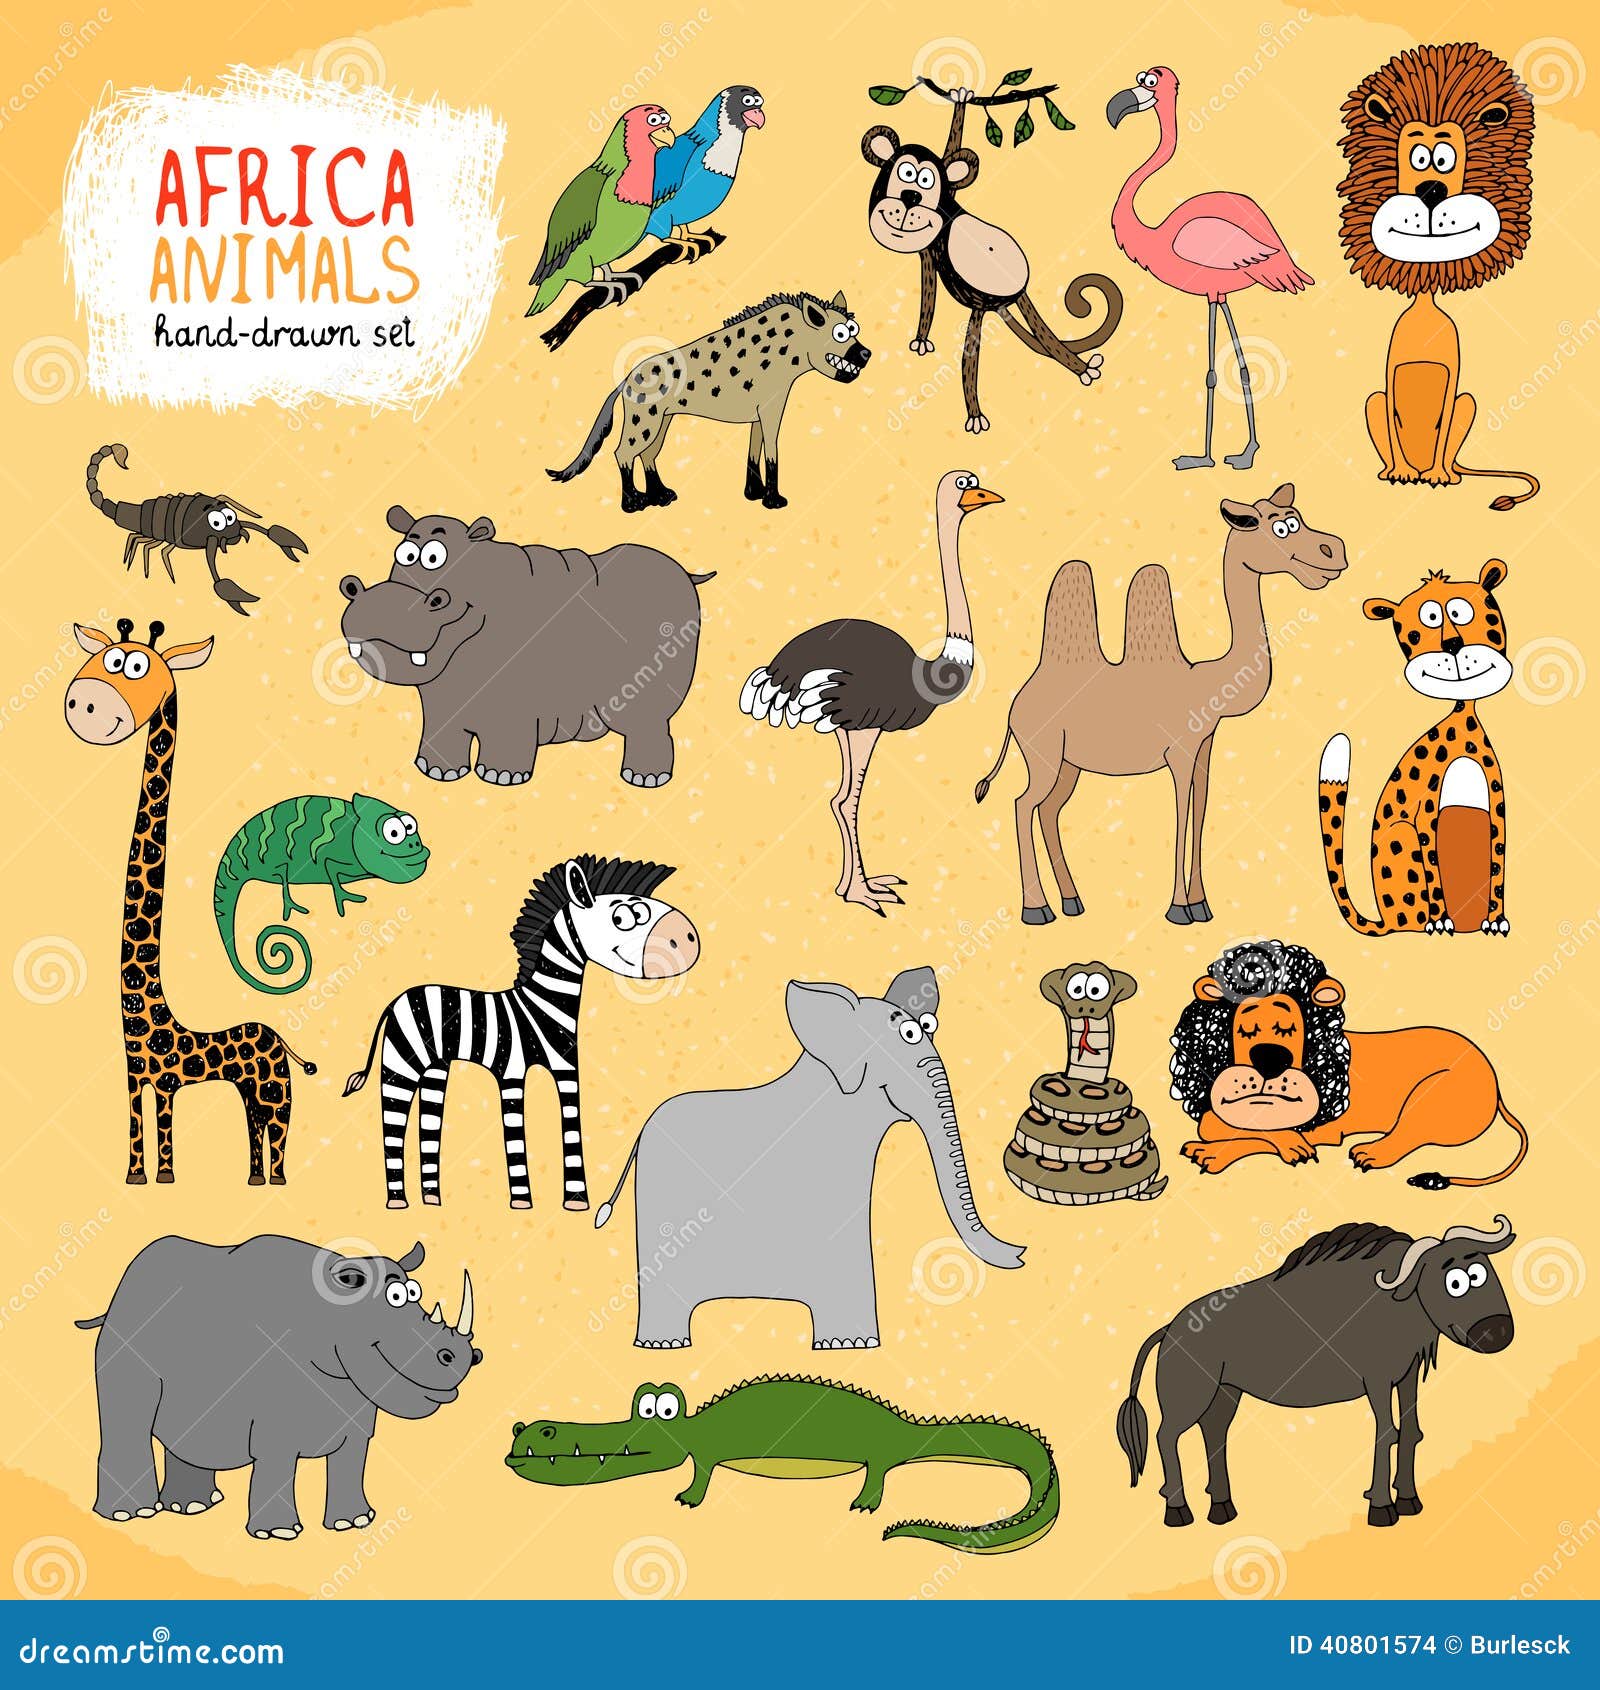 Giraffe elephant monkey. Африканские животные рисунки. Животные Африки для детей. Плакат с животными. Иллюстрация Африки с изображением животных.